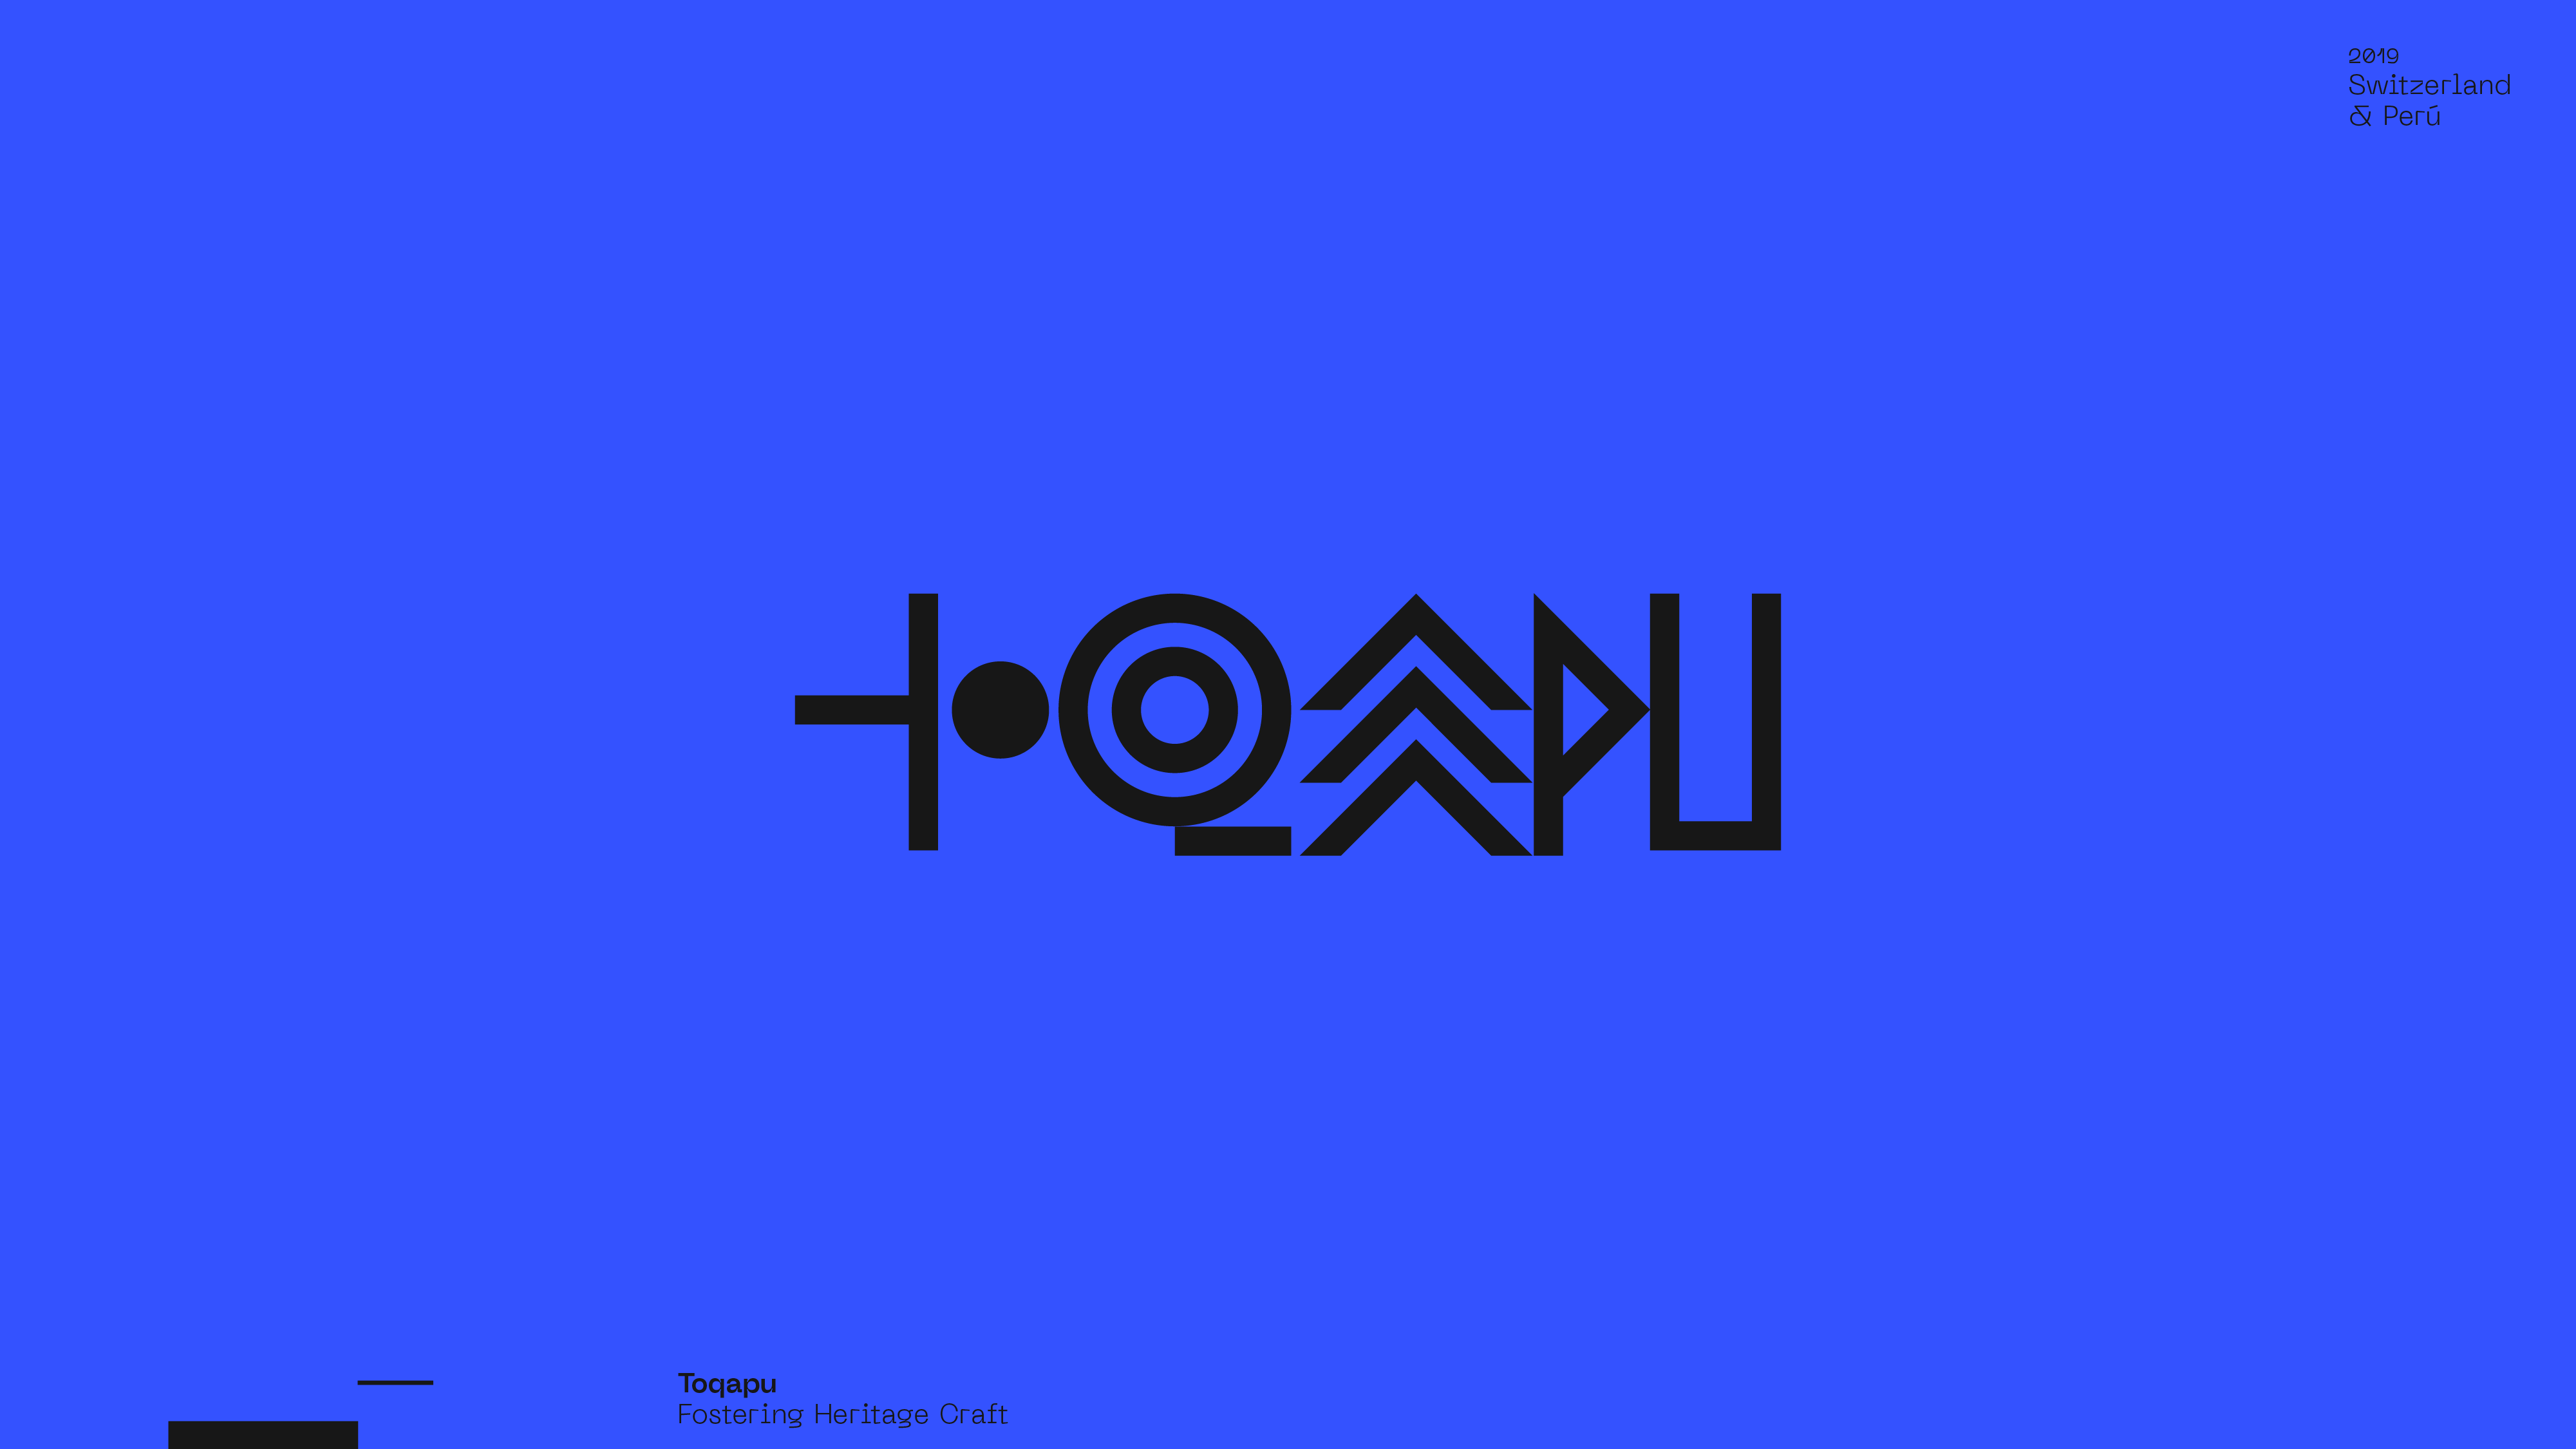 Guapo Design Studio by Esteban Ibarra Logofolio 2019 logo designer — Toqapu